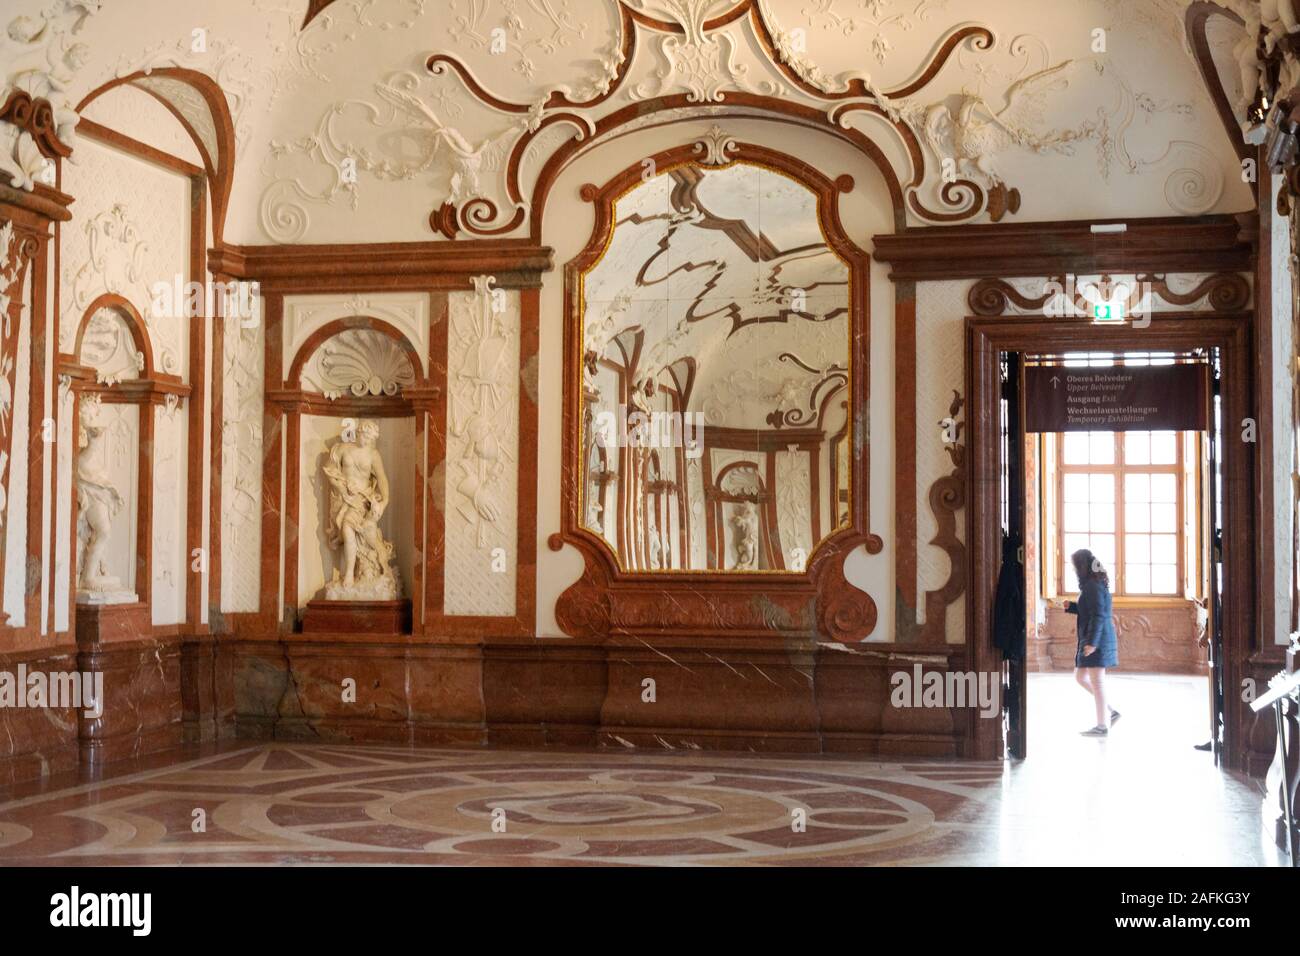 Sala di marmo, storico palazzo del Belvedere di Vienna; la sala di marmo nella parte interna inferiore del Belvedere, Vienna Austria Foto Stock